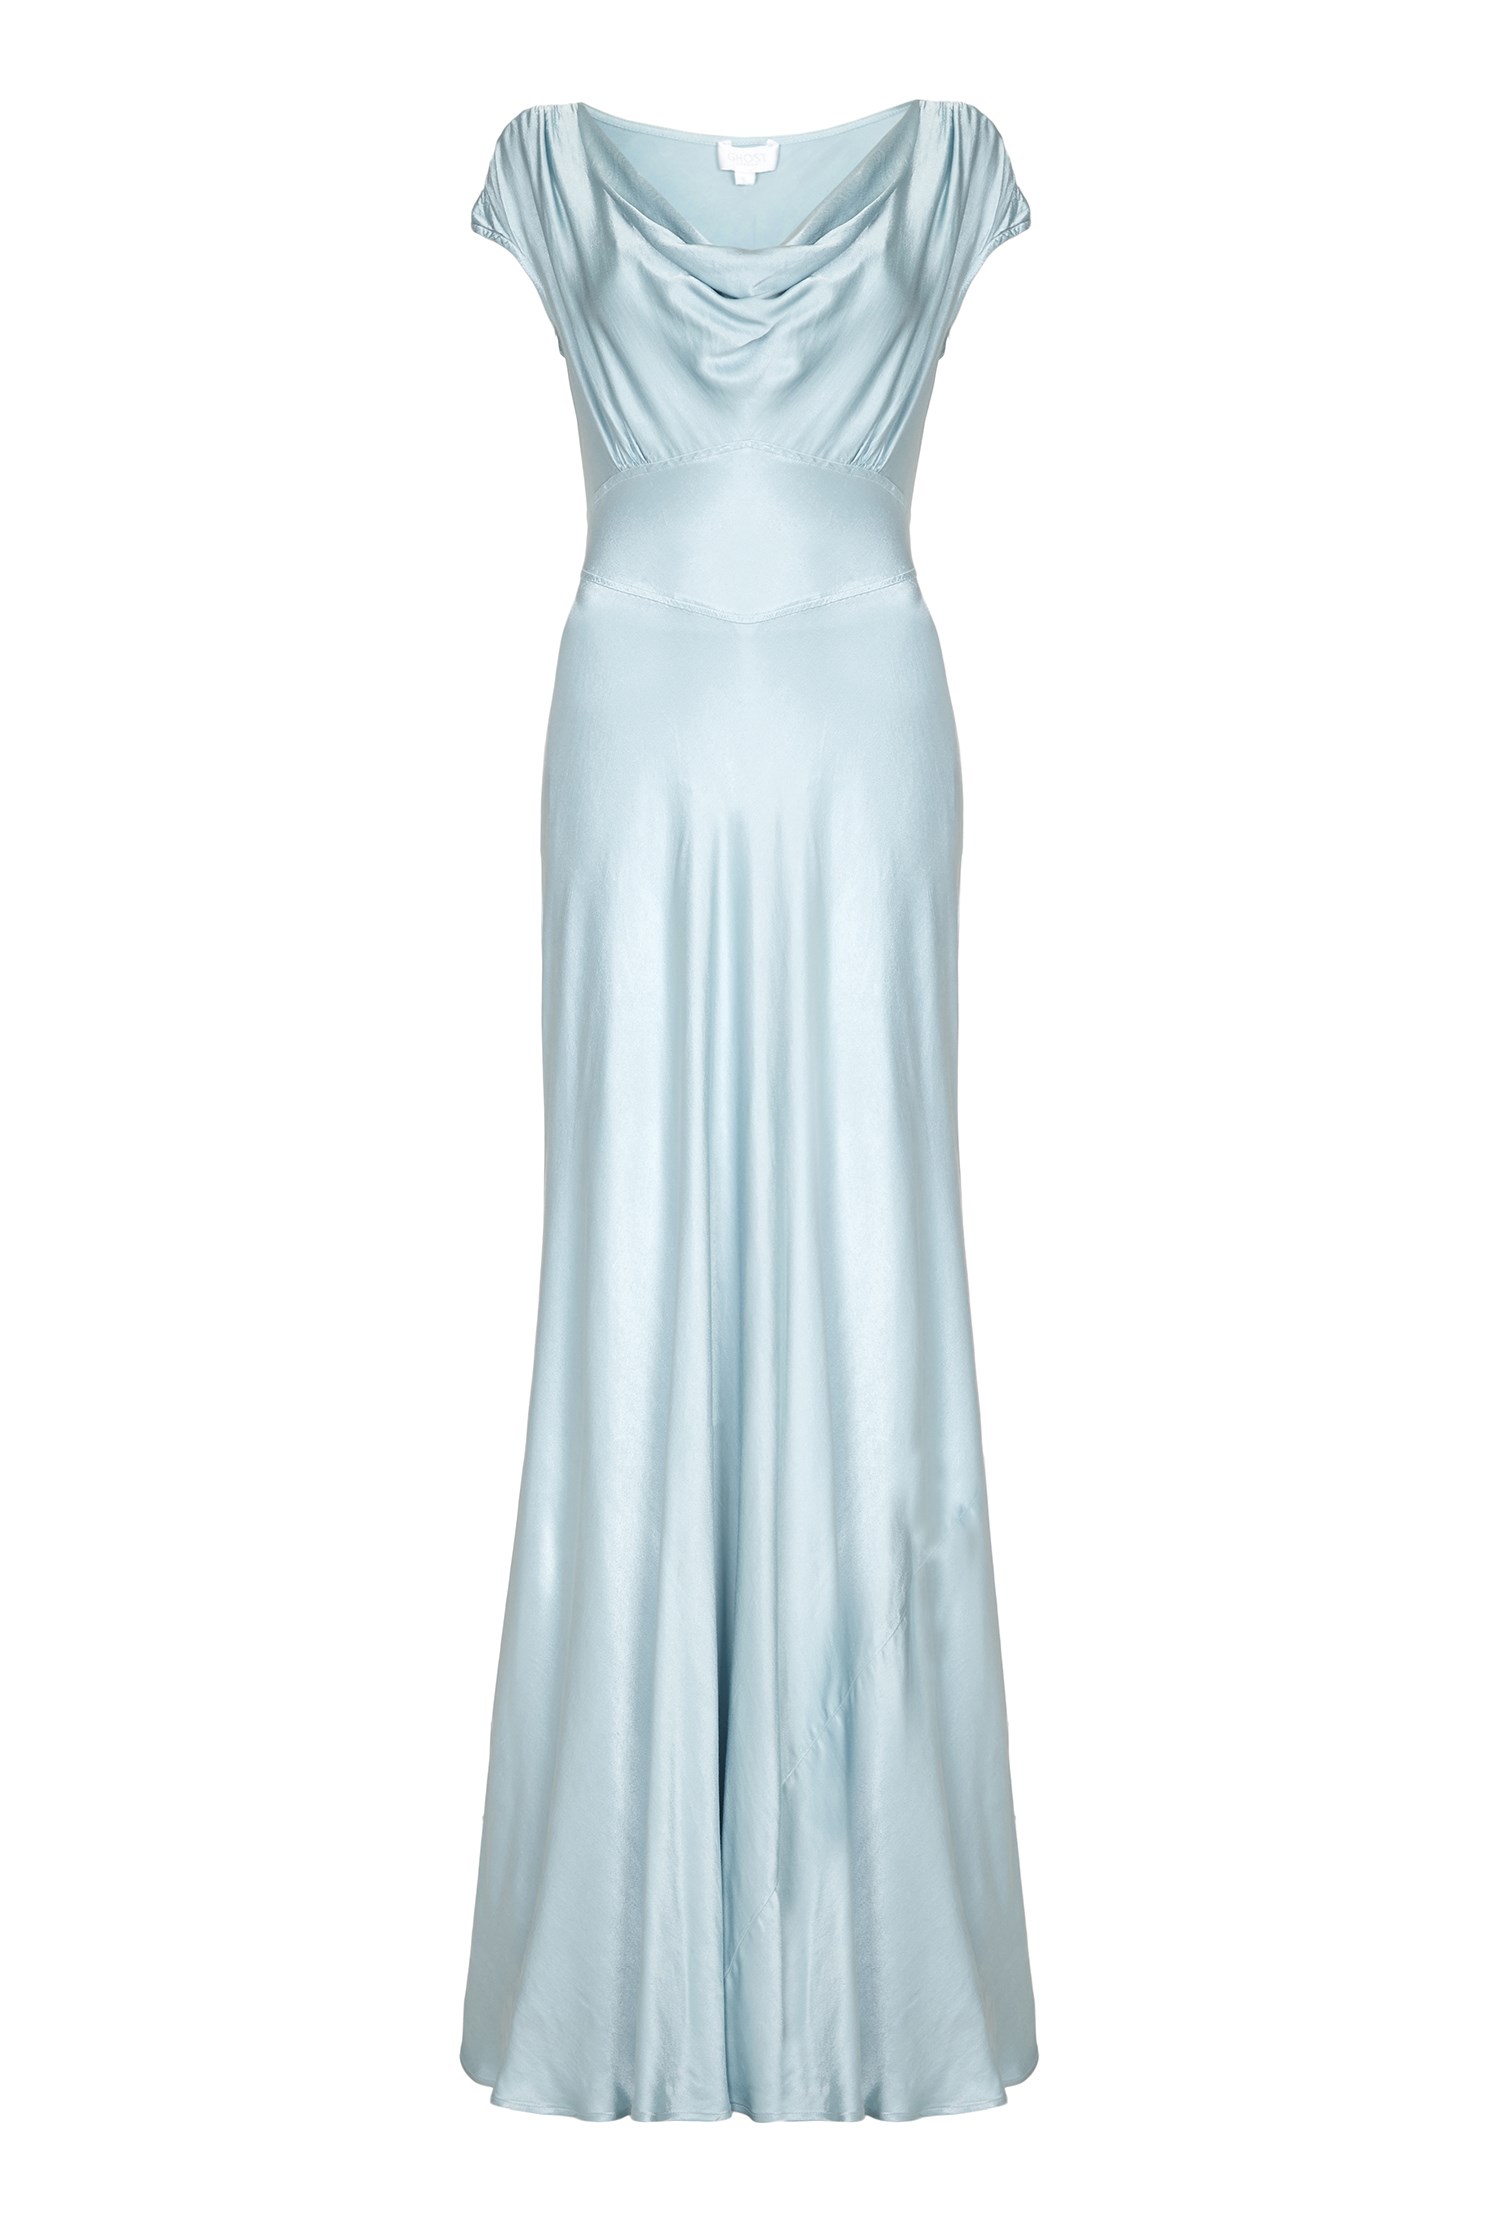 Fern Dress Sky Light | Ghost.co.uk